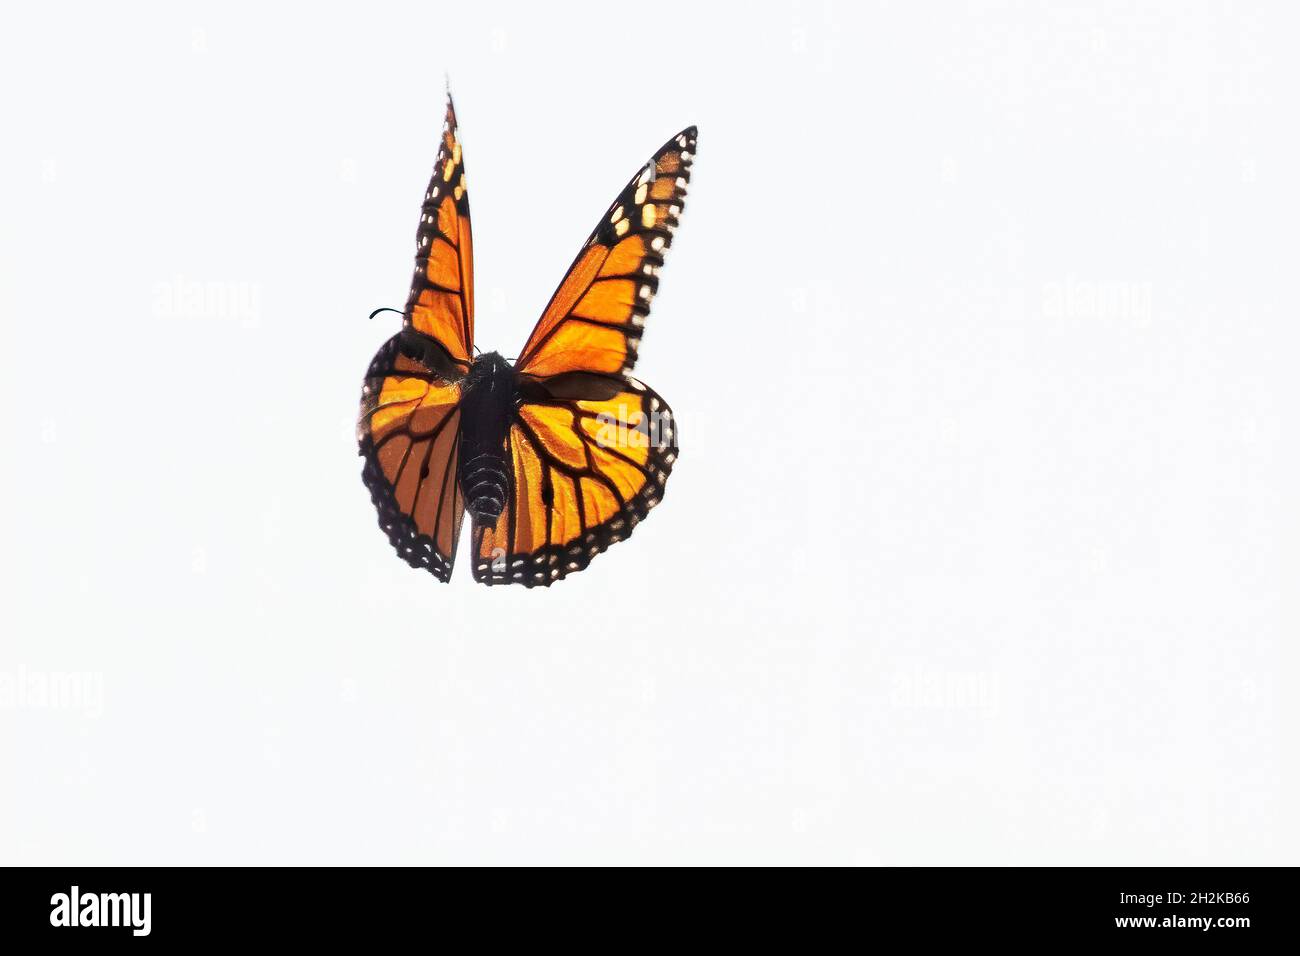 Vol de papillons monarques pendant la migration d'automne d'octobre Banque D'Images